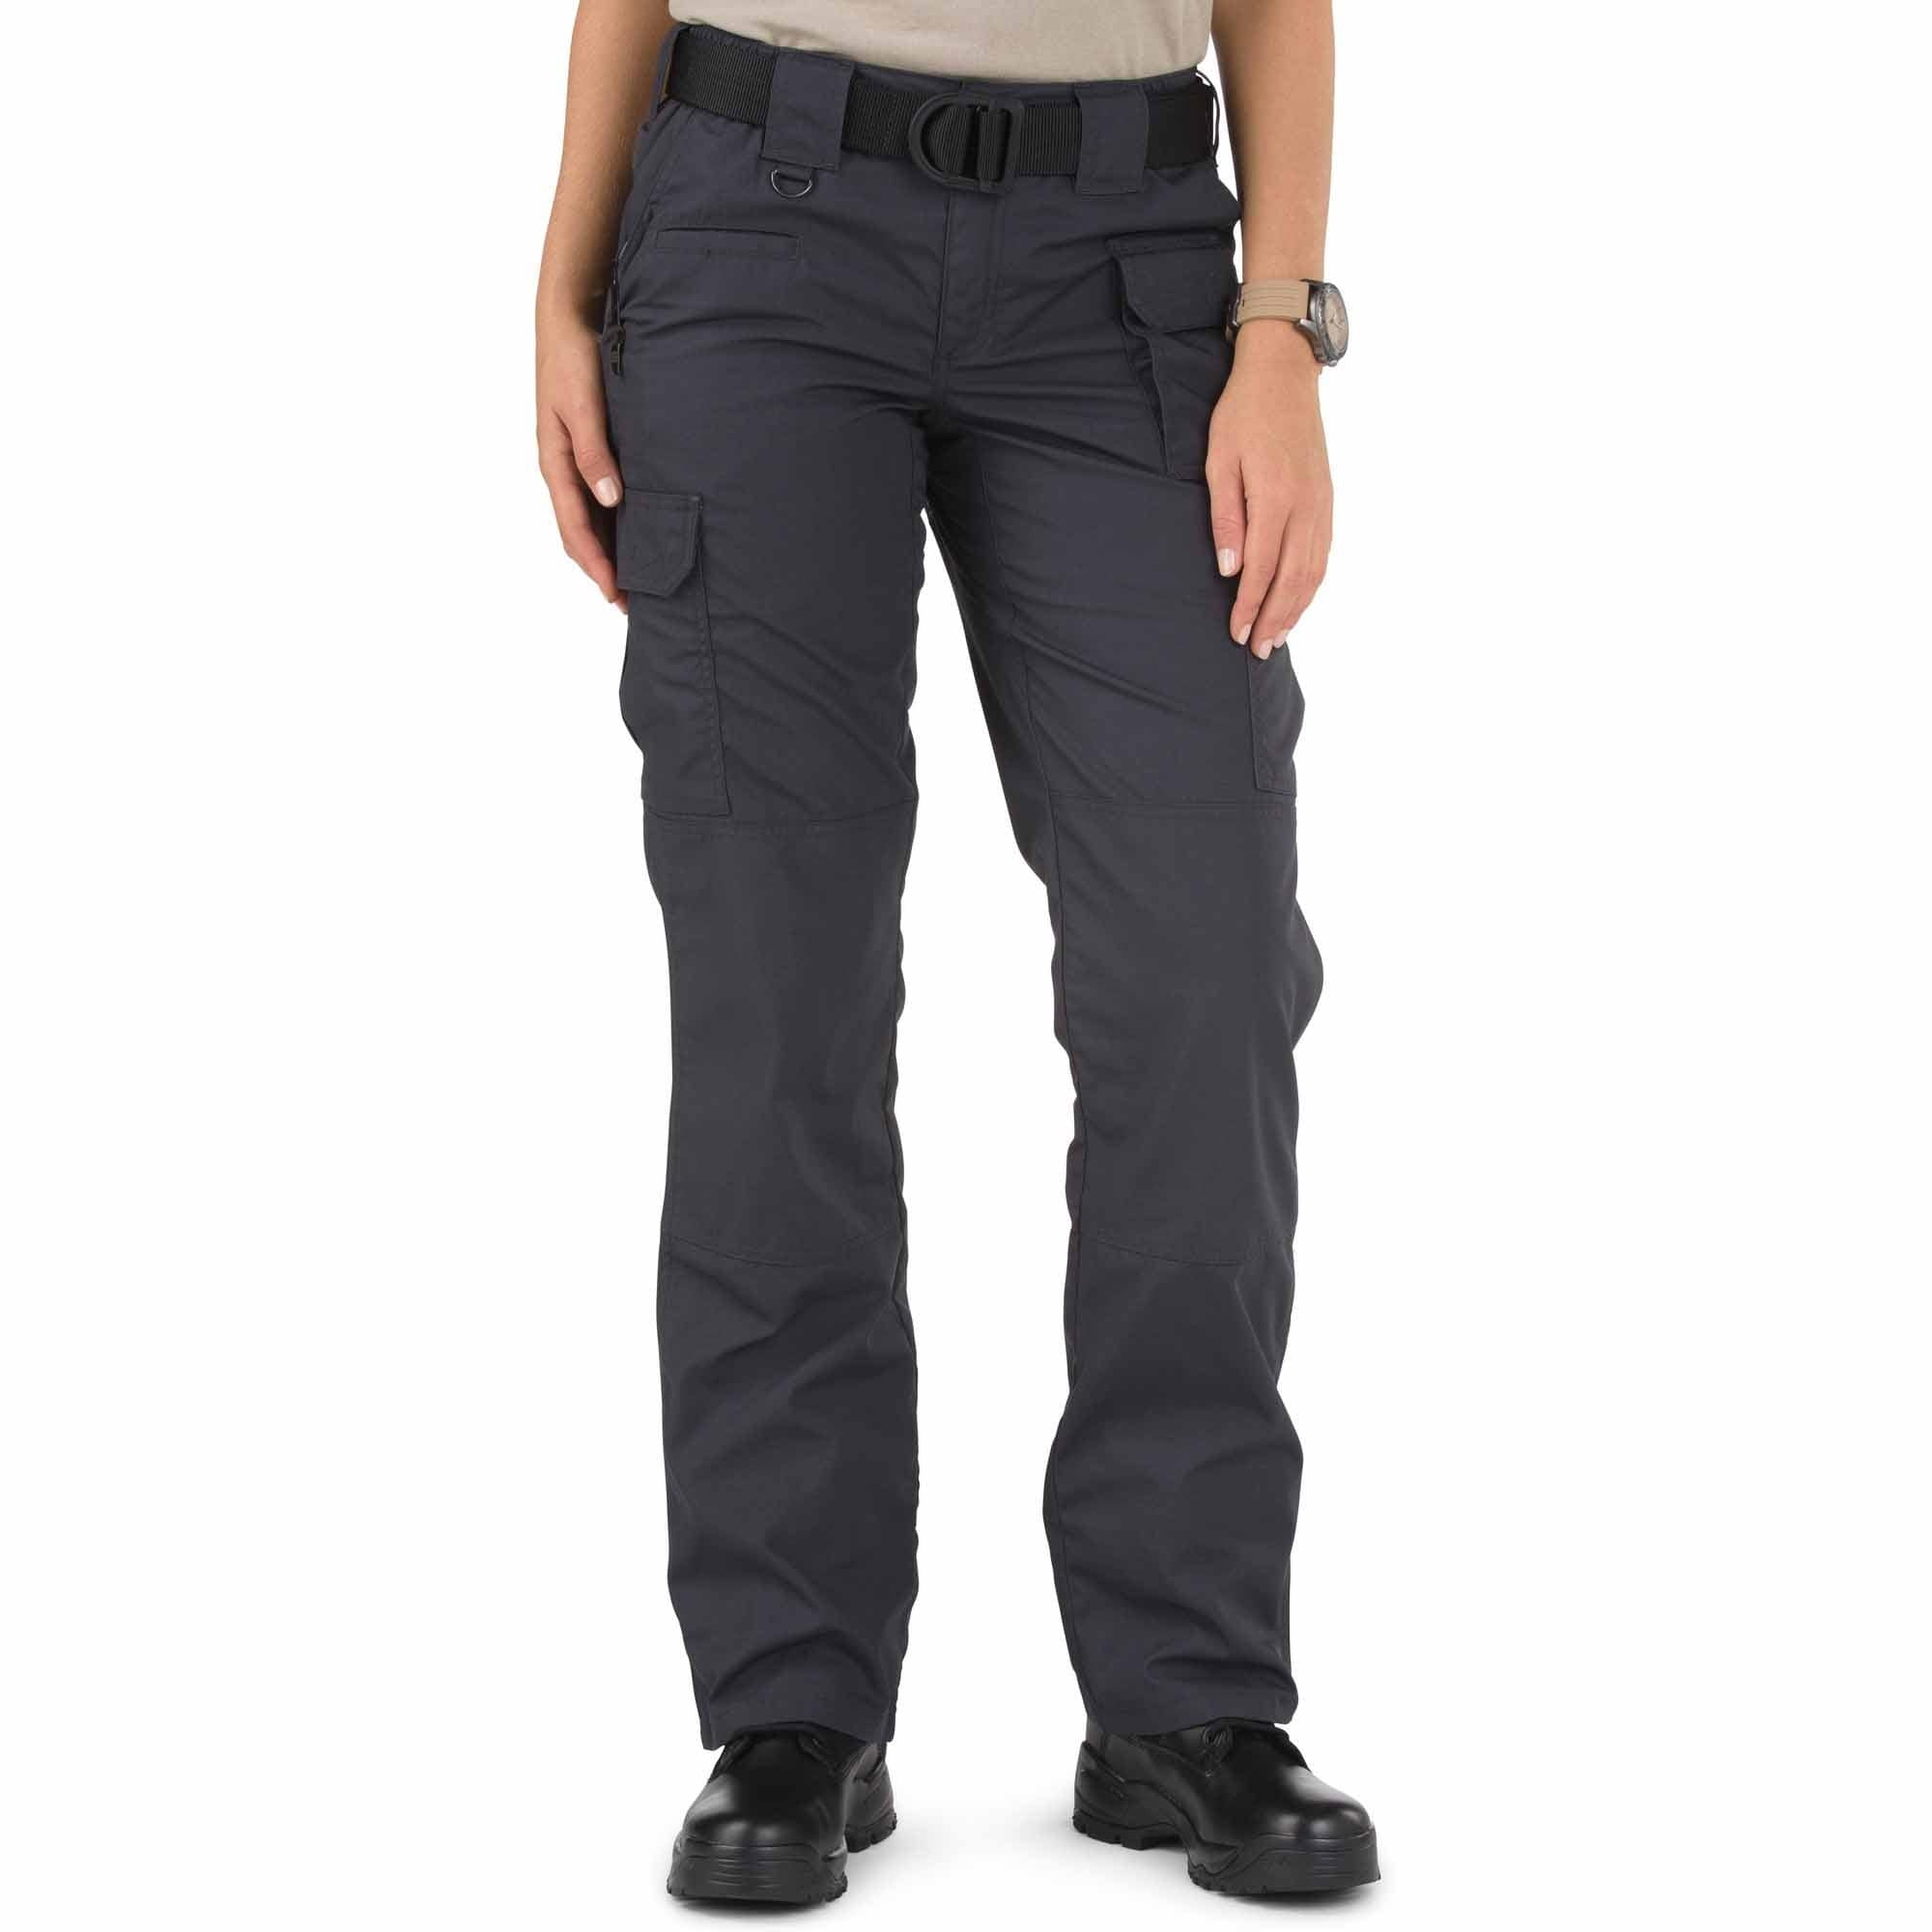 5.11 Tactical Apparel Charcoal / Long 10 5.11 Tactical Womens Taclite Pro Pants